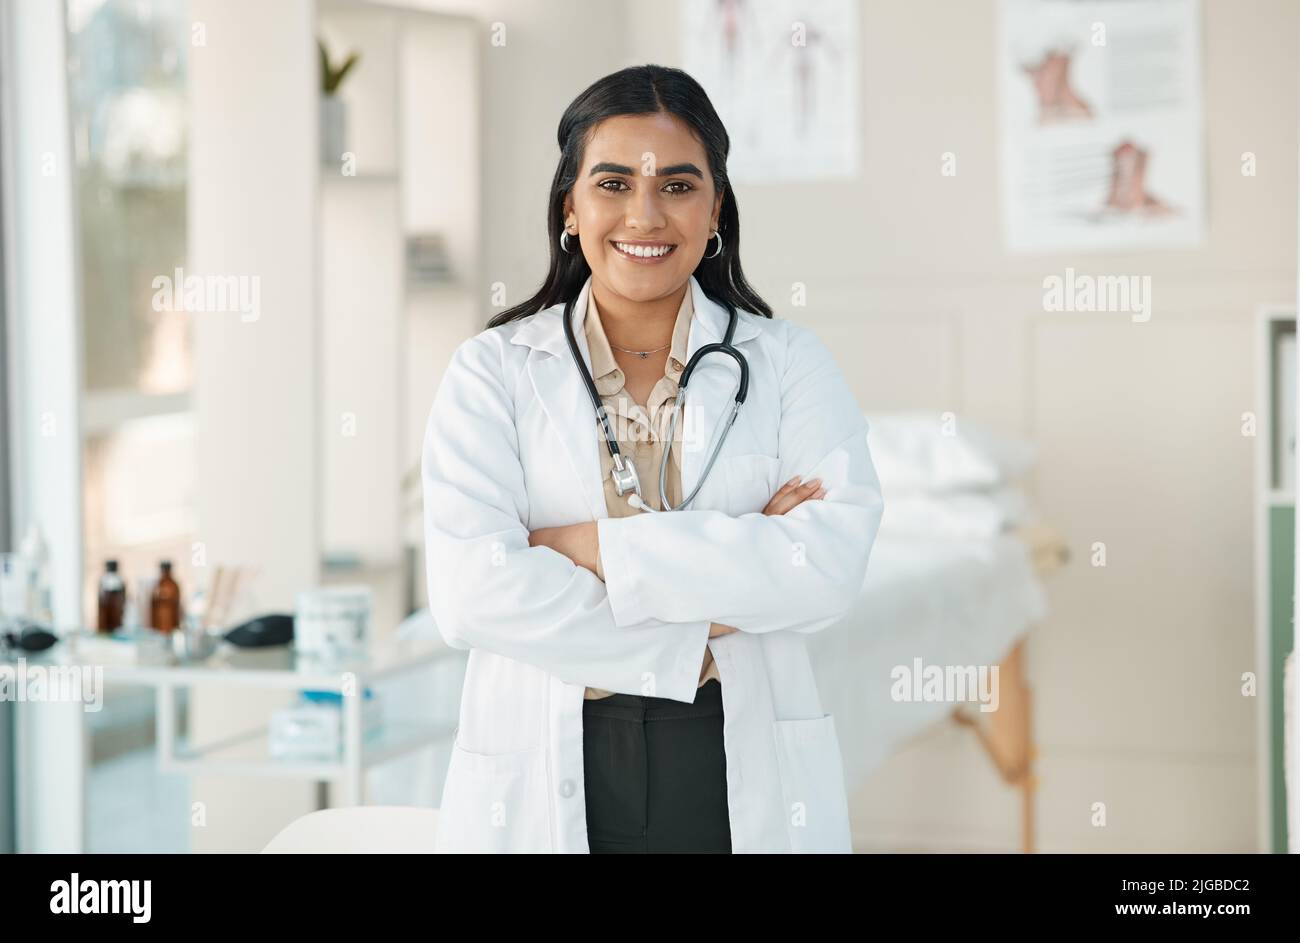 Eine attraktive junge Ärztin, die allein in ihrer Klinik steht und ihre Arme gefaltet hat. Stockfoto